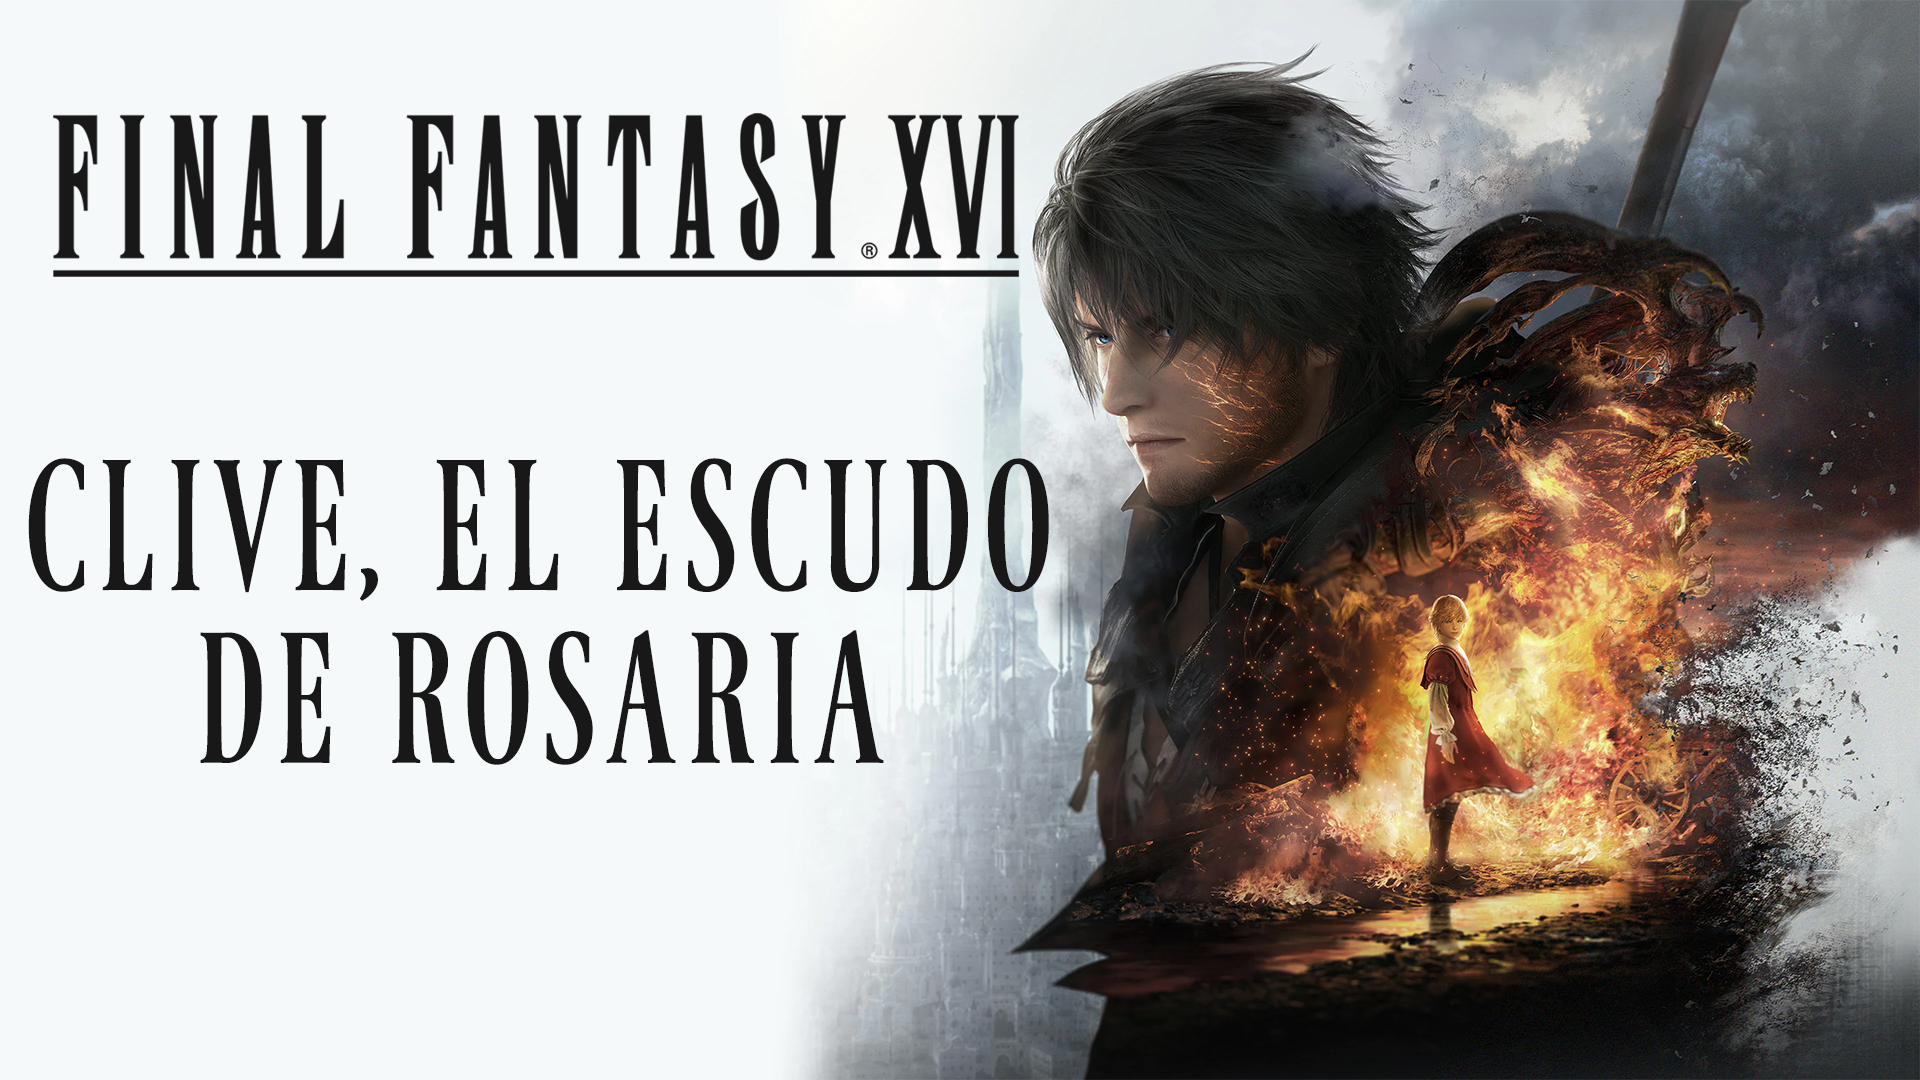 Stream Final Fantasy XVI – Clive, El Escudo de Rosaria